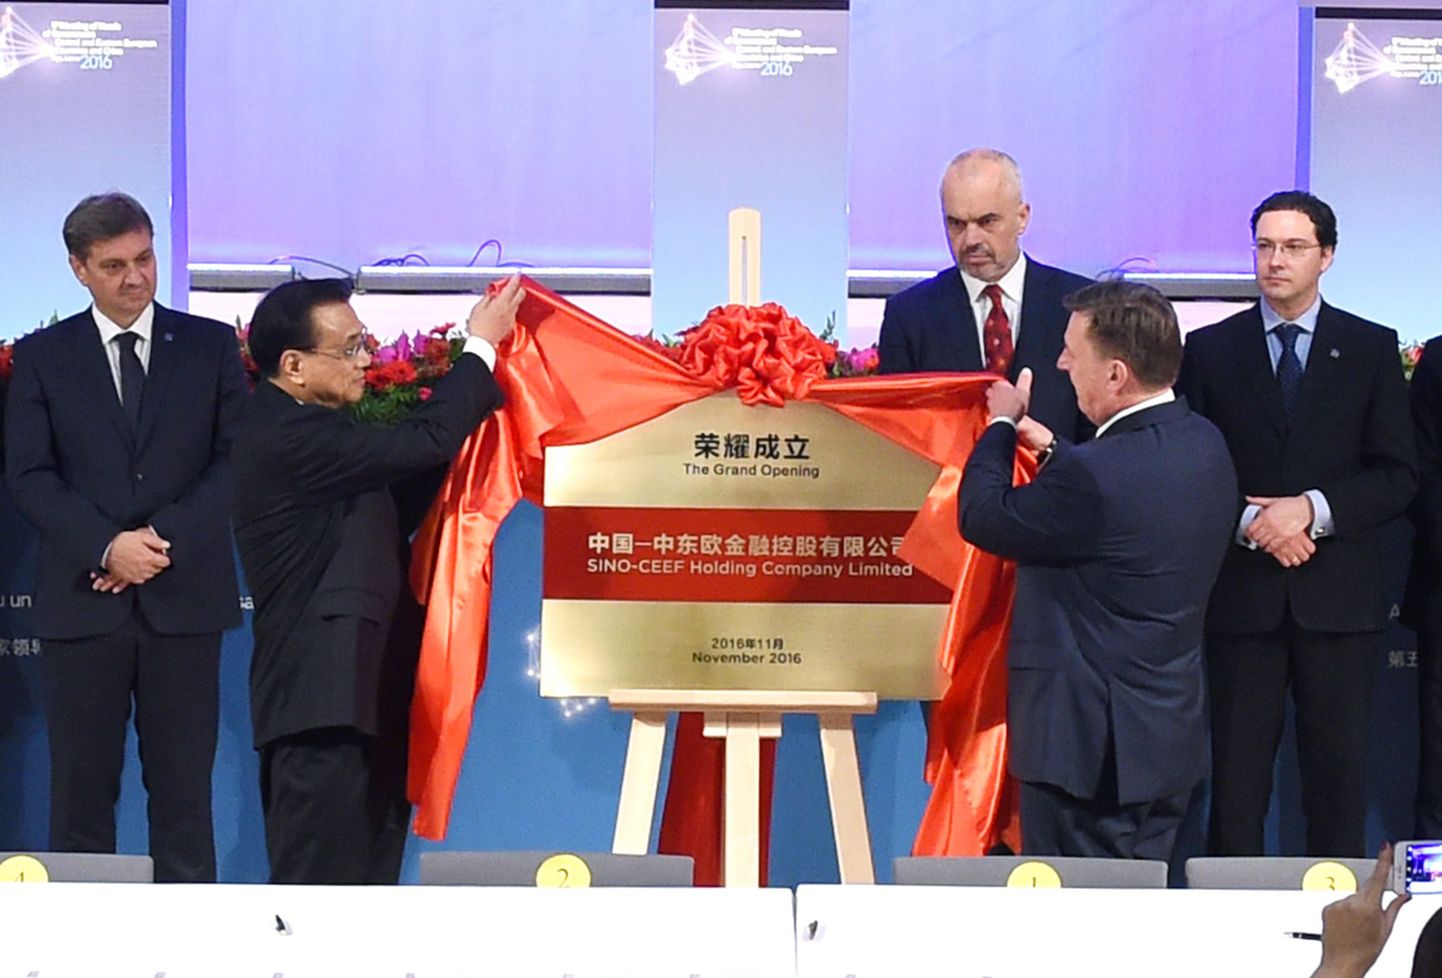 Hiina peaminister Li Keqiang (vasakul) ja Läti peaminister Maris Kucinskis (paremal) avavad pidulikult Kesk-ja Ida-Euroopa suunalise investeerimisfondi.